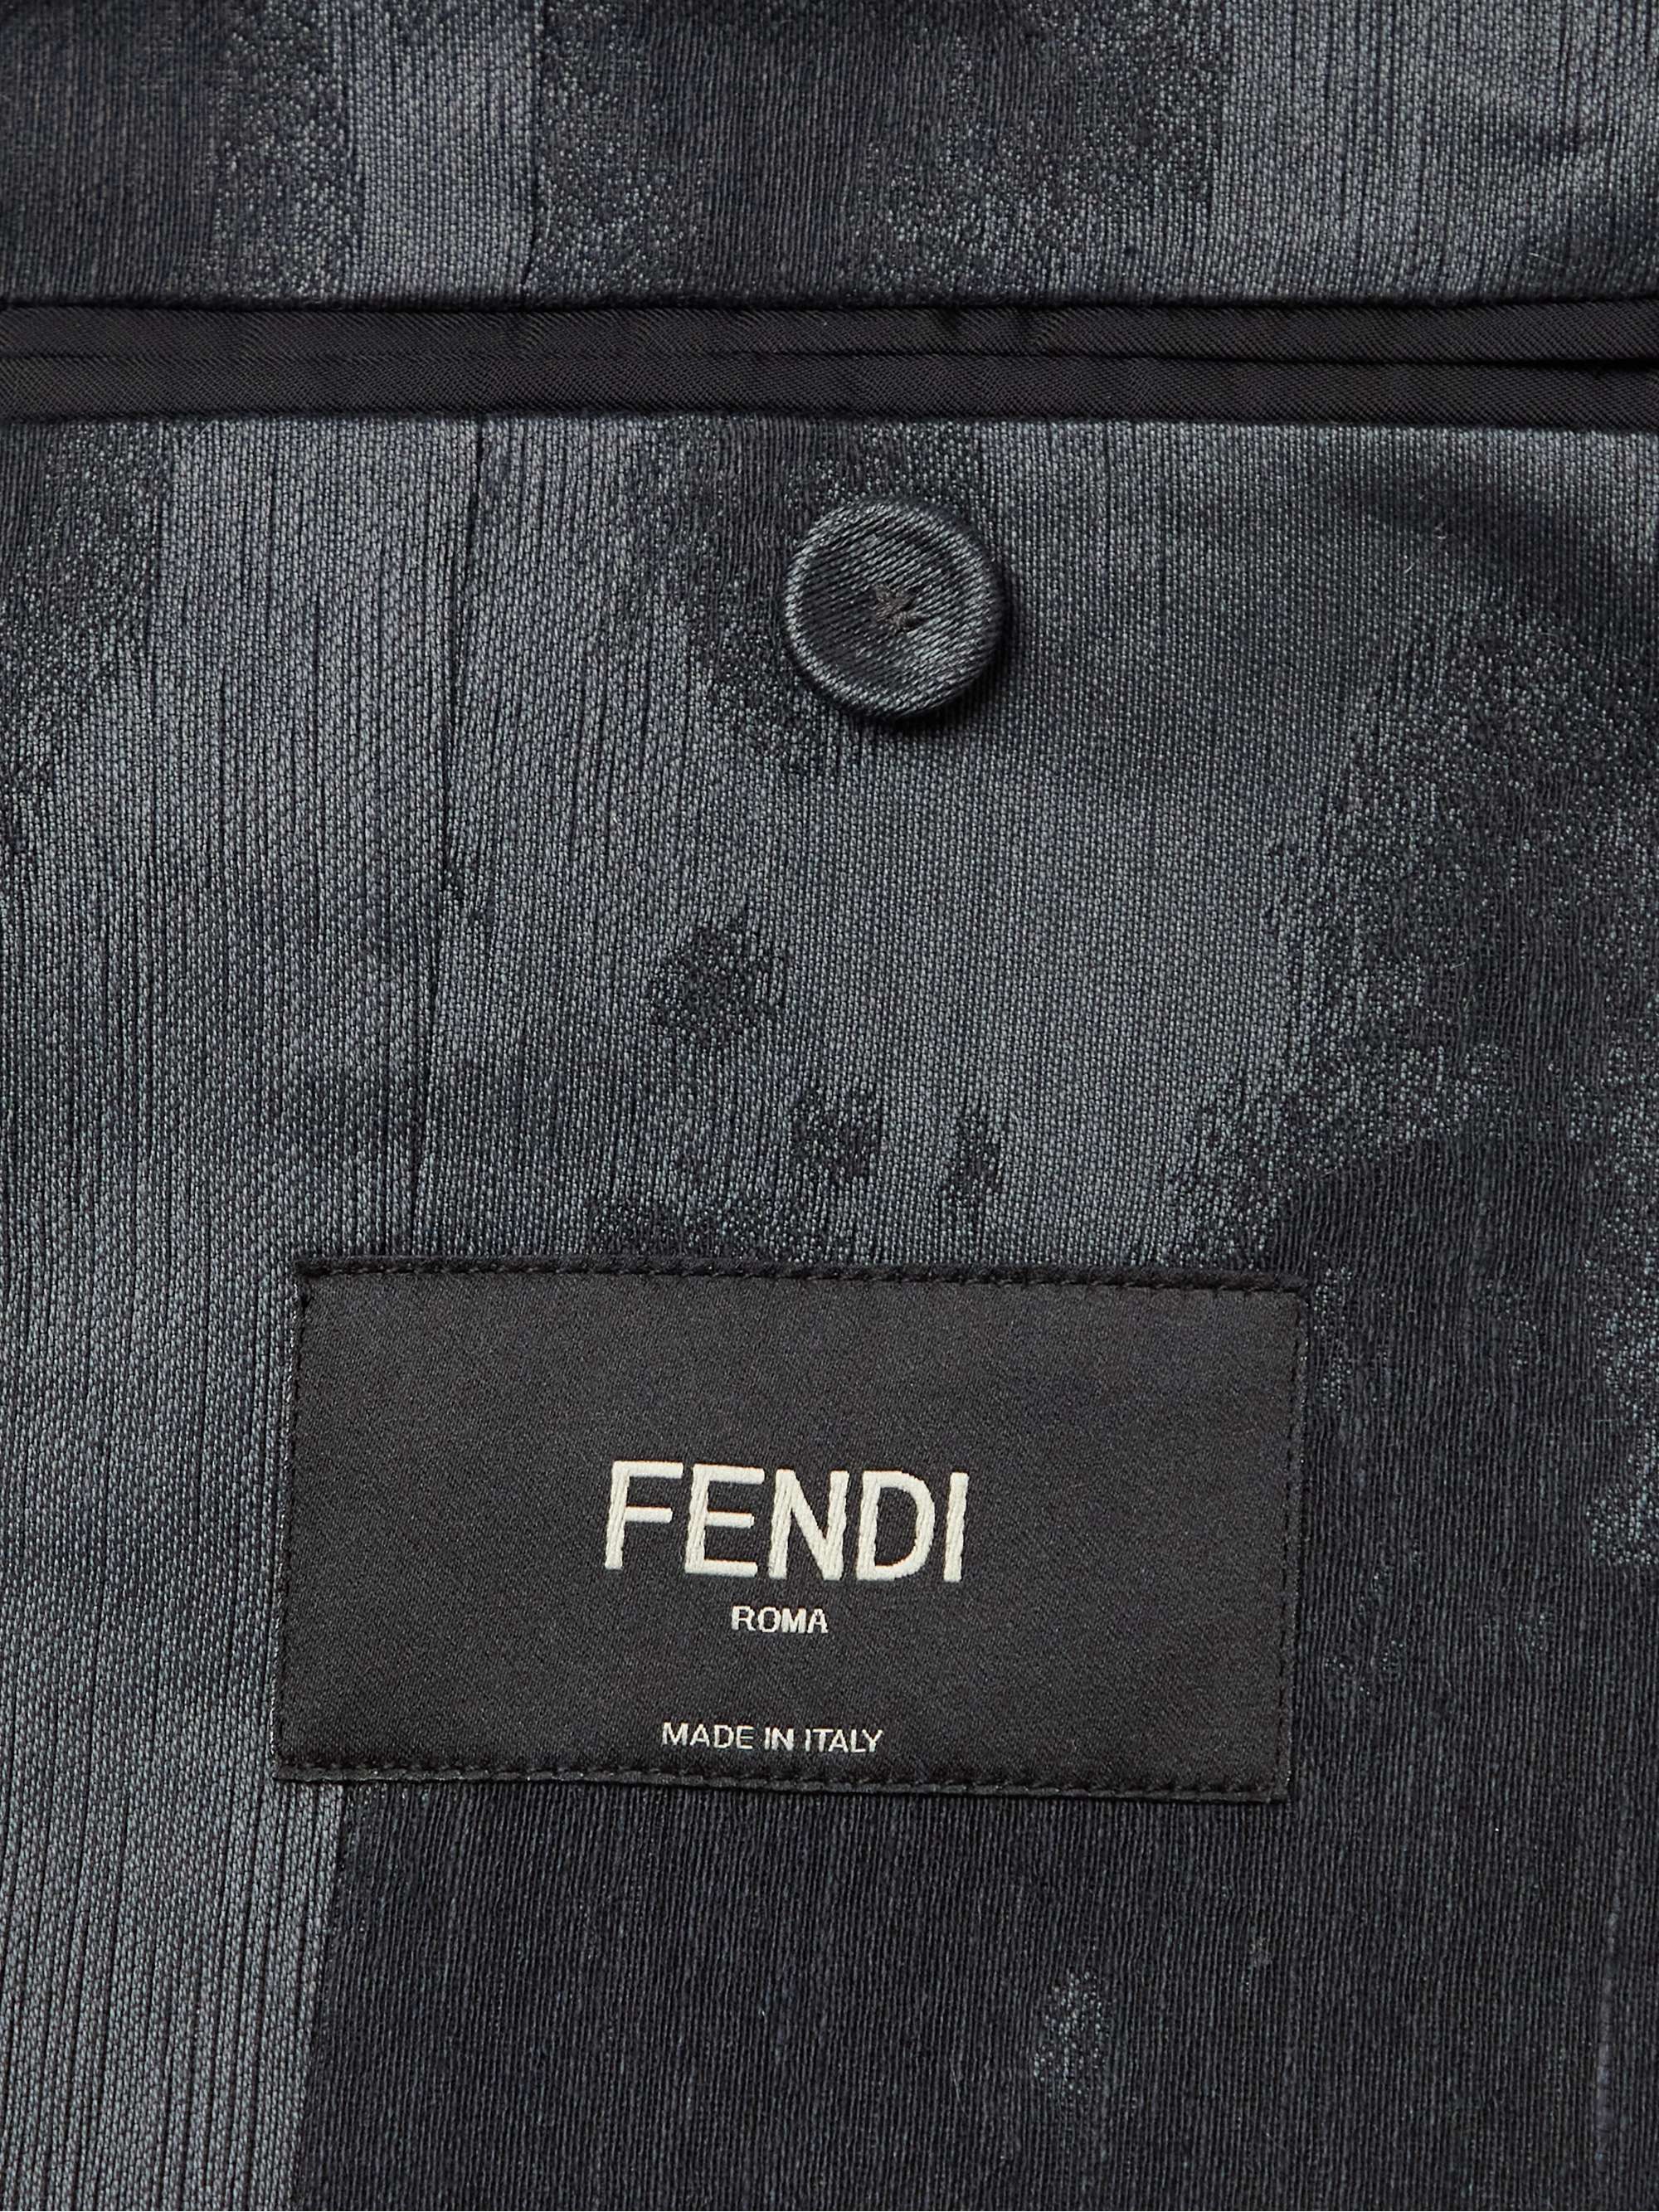 FENDI Tie-Dyed Linen, Cotton and Silk-Blend Blazer